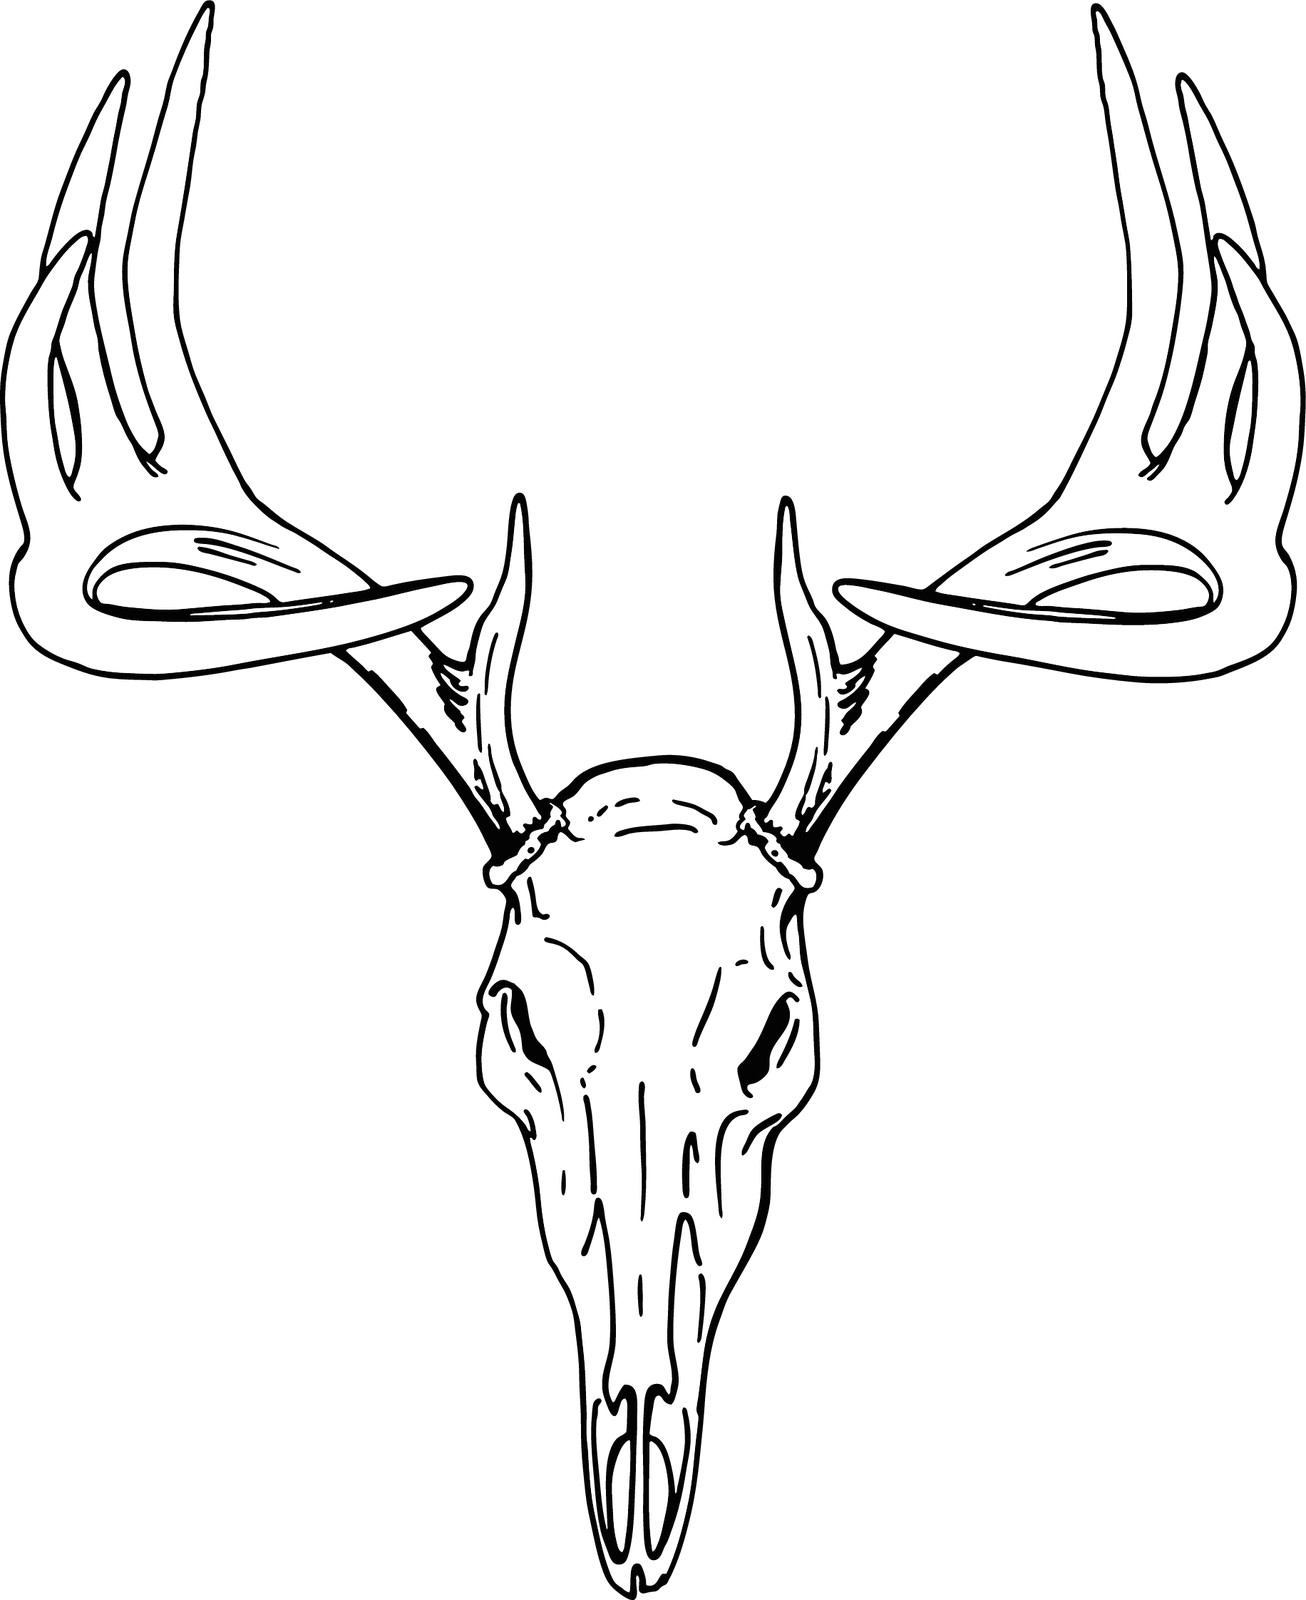 How to Draw A Deer Head Easy Pin by Ghostify On Tattoo Deer Drawing Deer Skulls Drawings